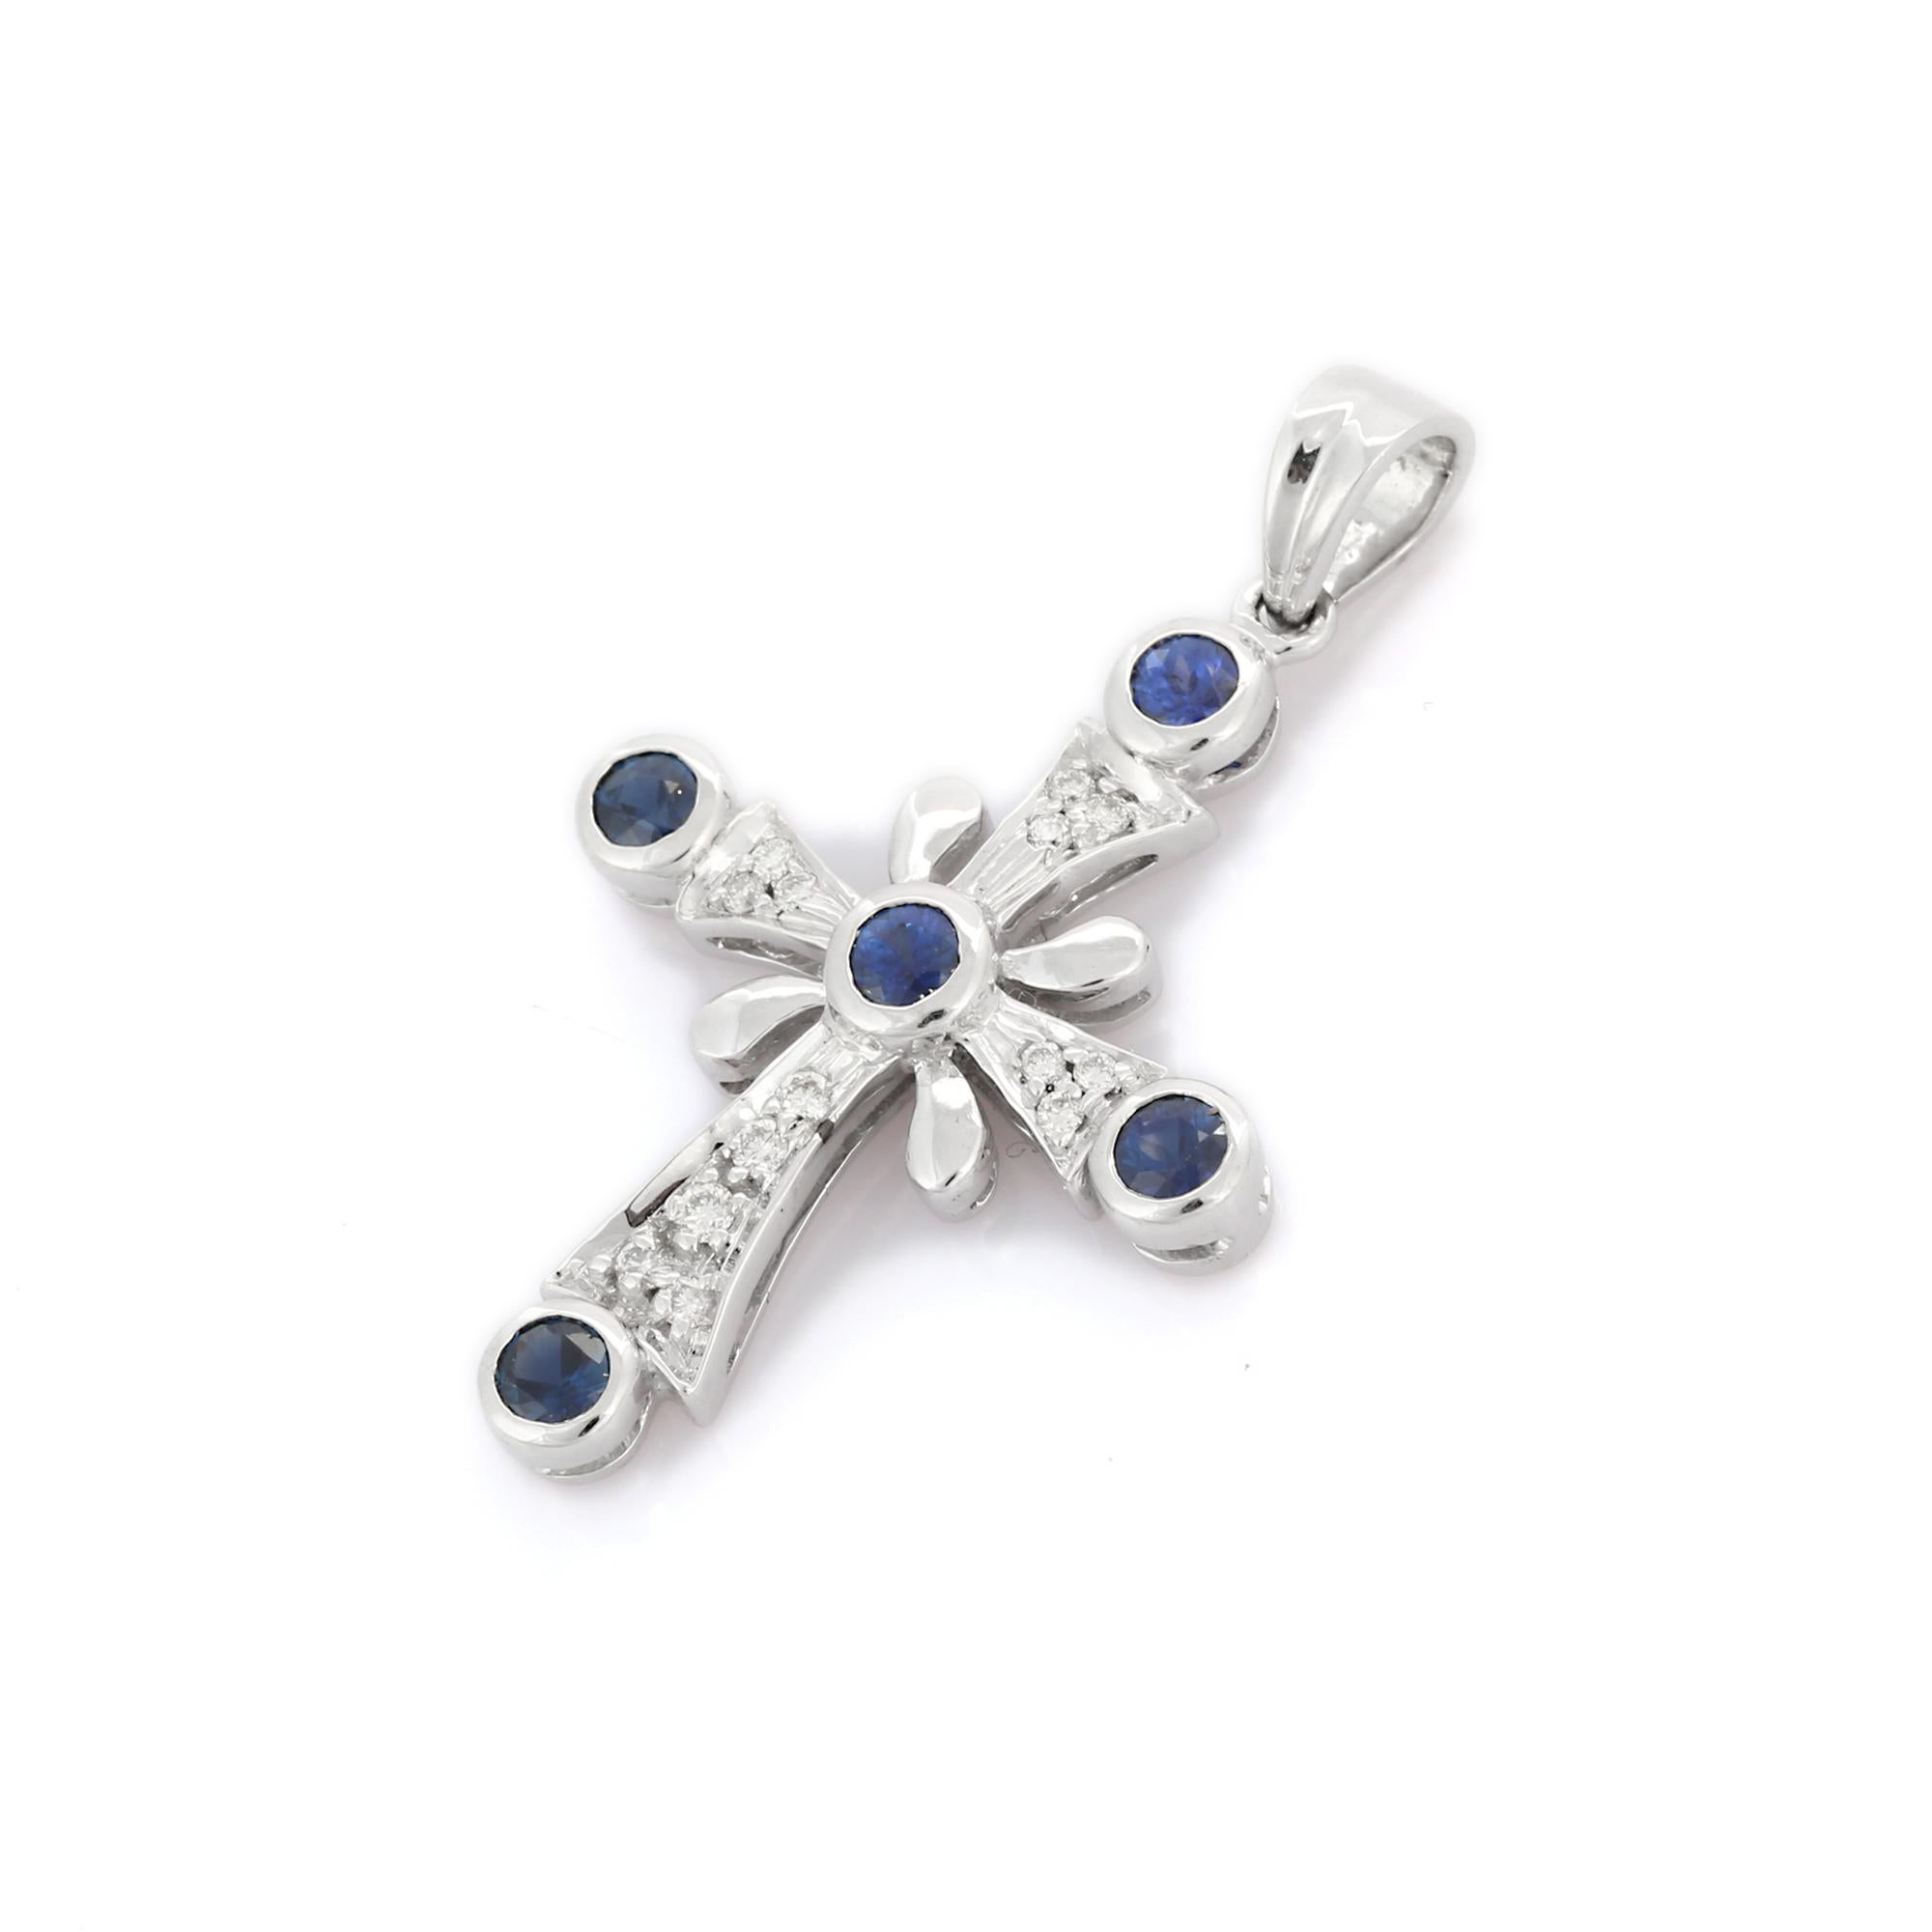 Pendentif croix en saphir bleu naturel en or 18K. Il est composé de saphirs taillés en carré et sertis de diamants qui complètent votre look avec une touche décente. Les pendentifs sont utilisés pour être portés ou offerts pour représenter l'amour